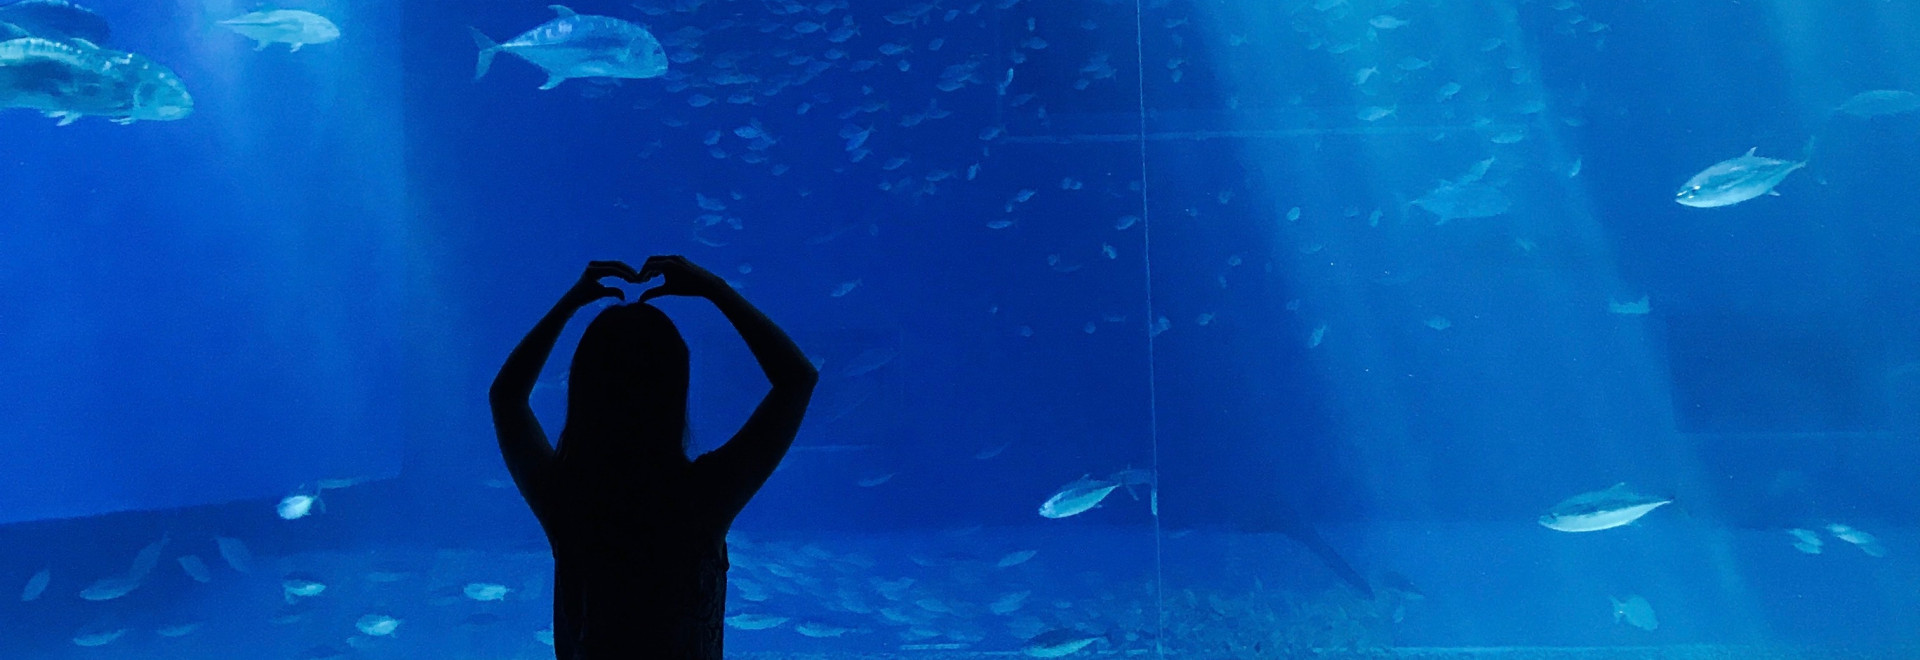 ontdek aquarium la rochelle verhuur van stacaravans voor kinderen